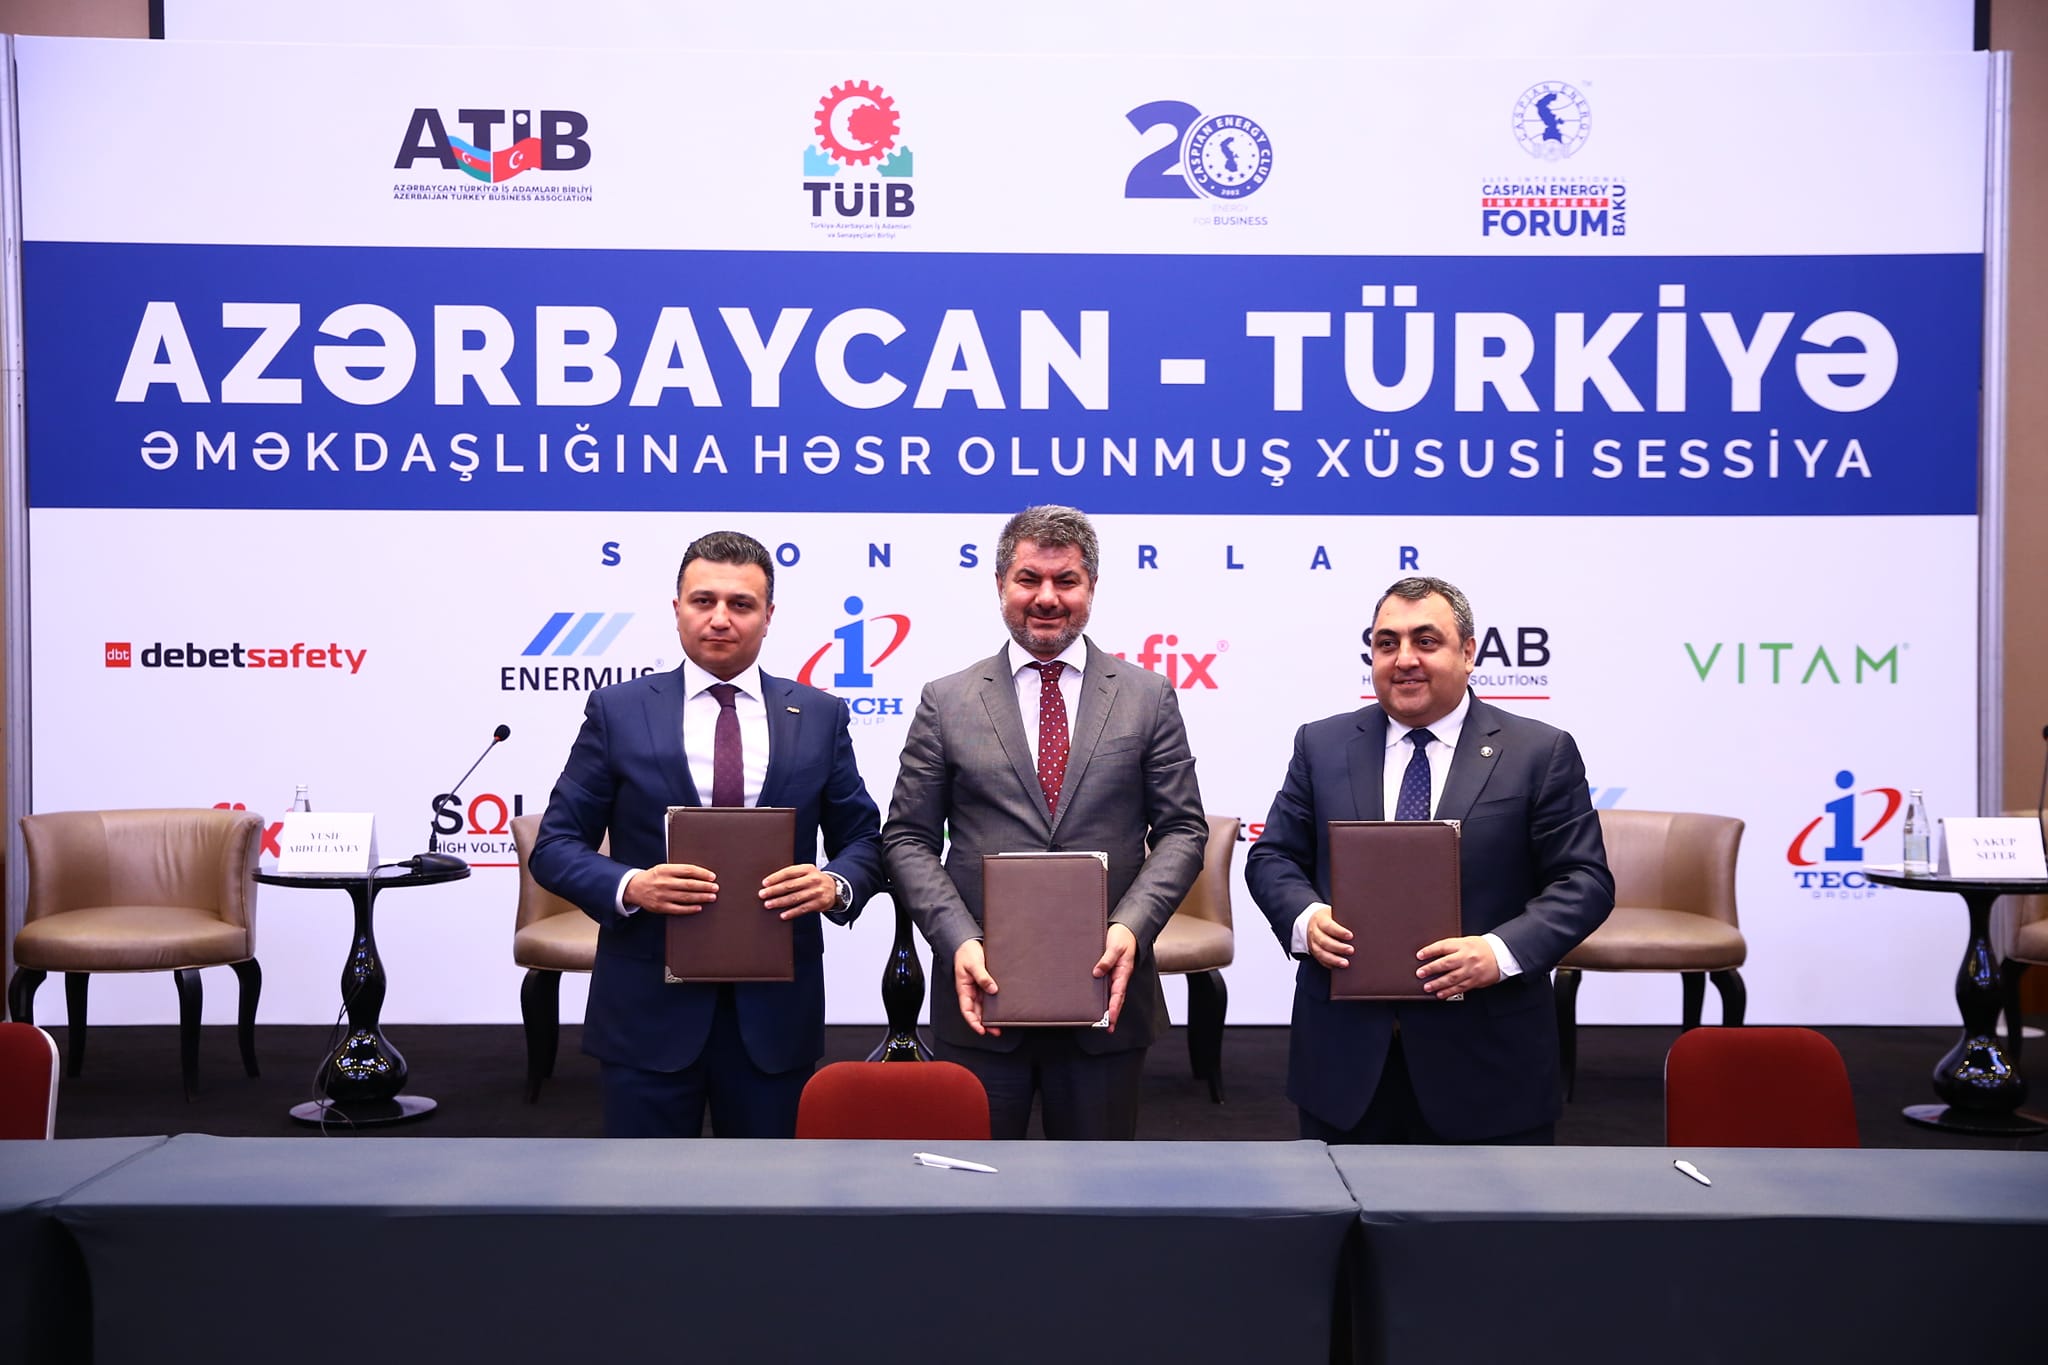 TÜİB, ATİB və Caspian Energy Club arasında Anlaşma Memorandumu imzalanıb